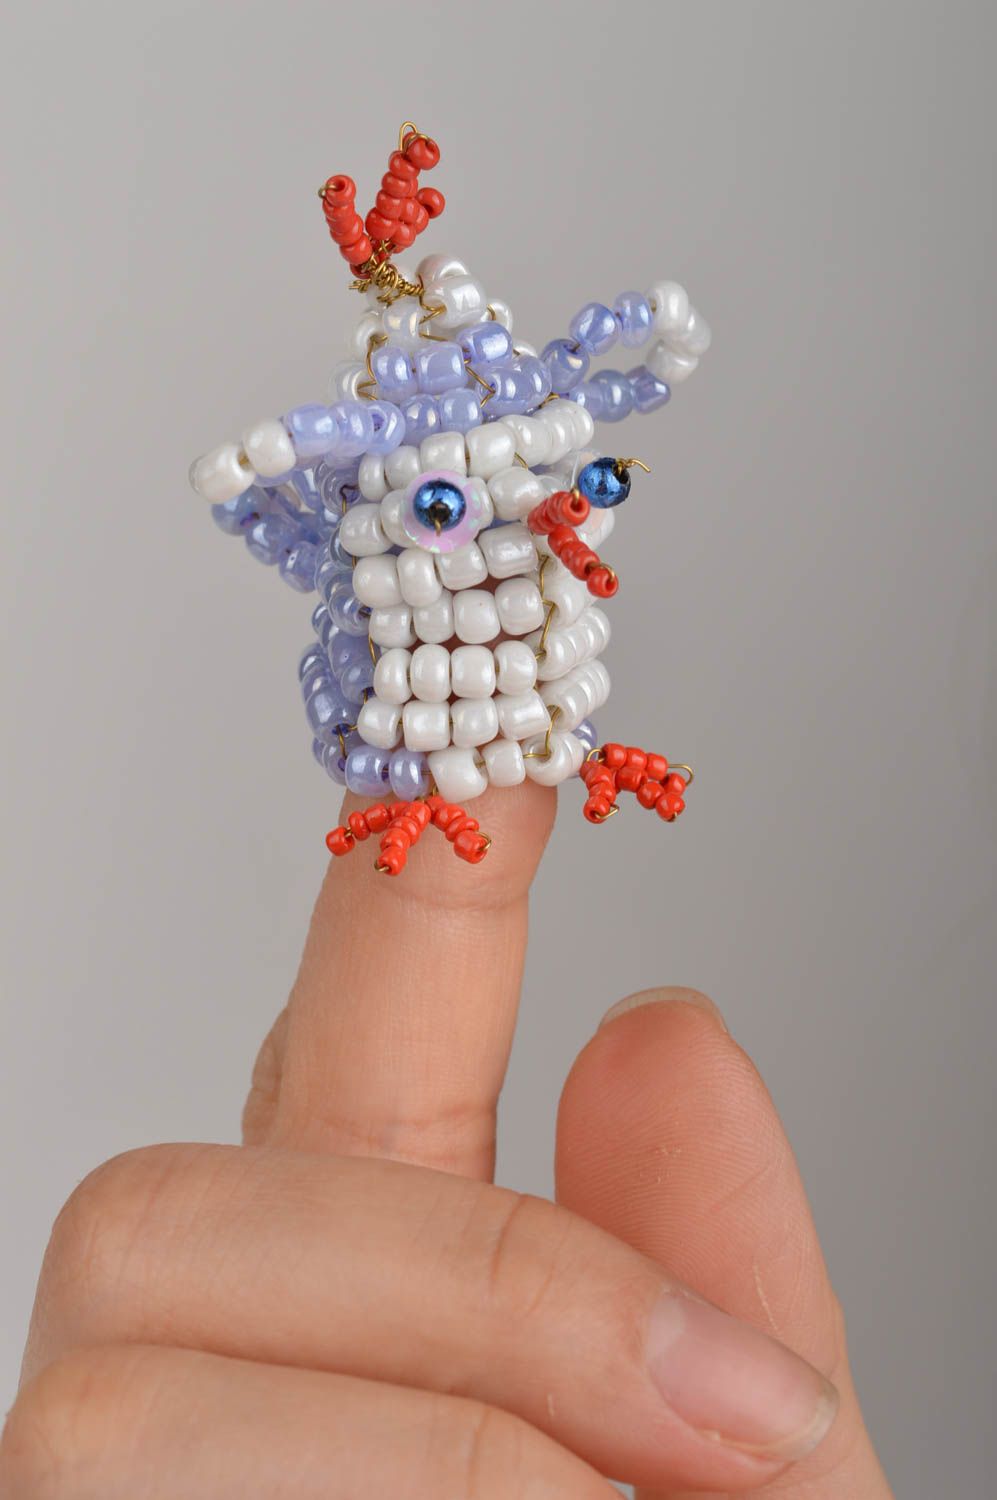 Пальчиковая игрушка цыпленок из бисера для кукольного театра ручной работы фото 1